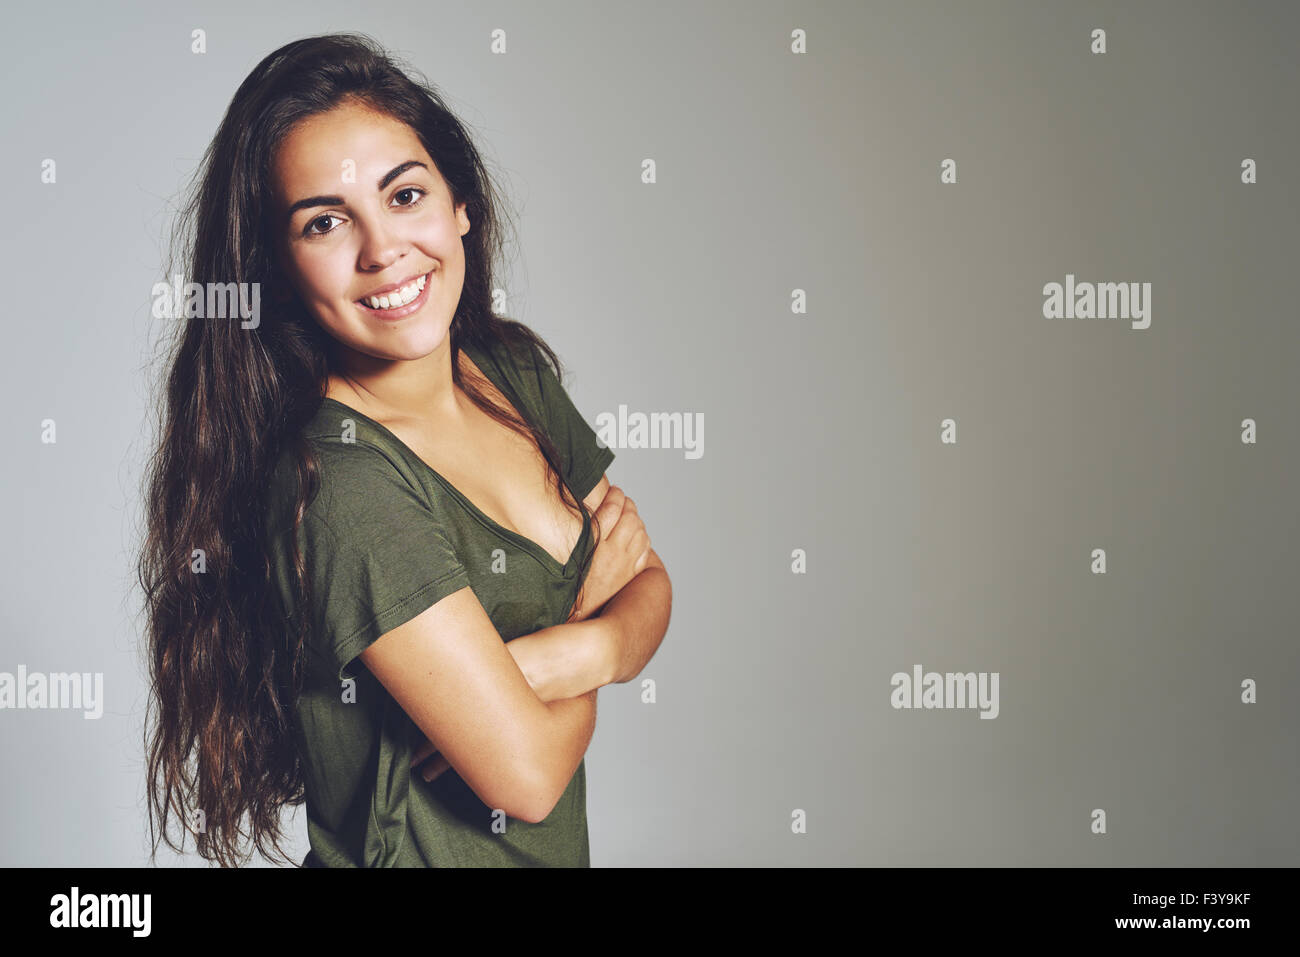 Ritratto di casual donna alla moda con le braccia incrociate e sorridente, su sfondo grigio Foto Stock